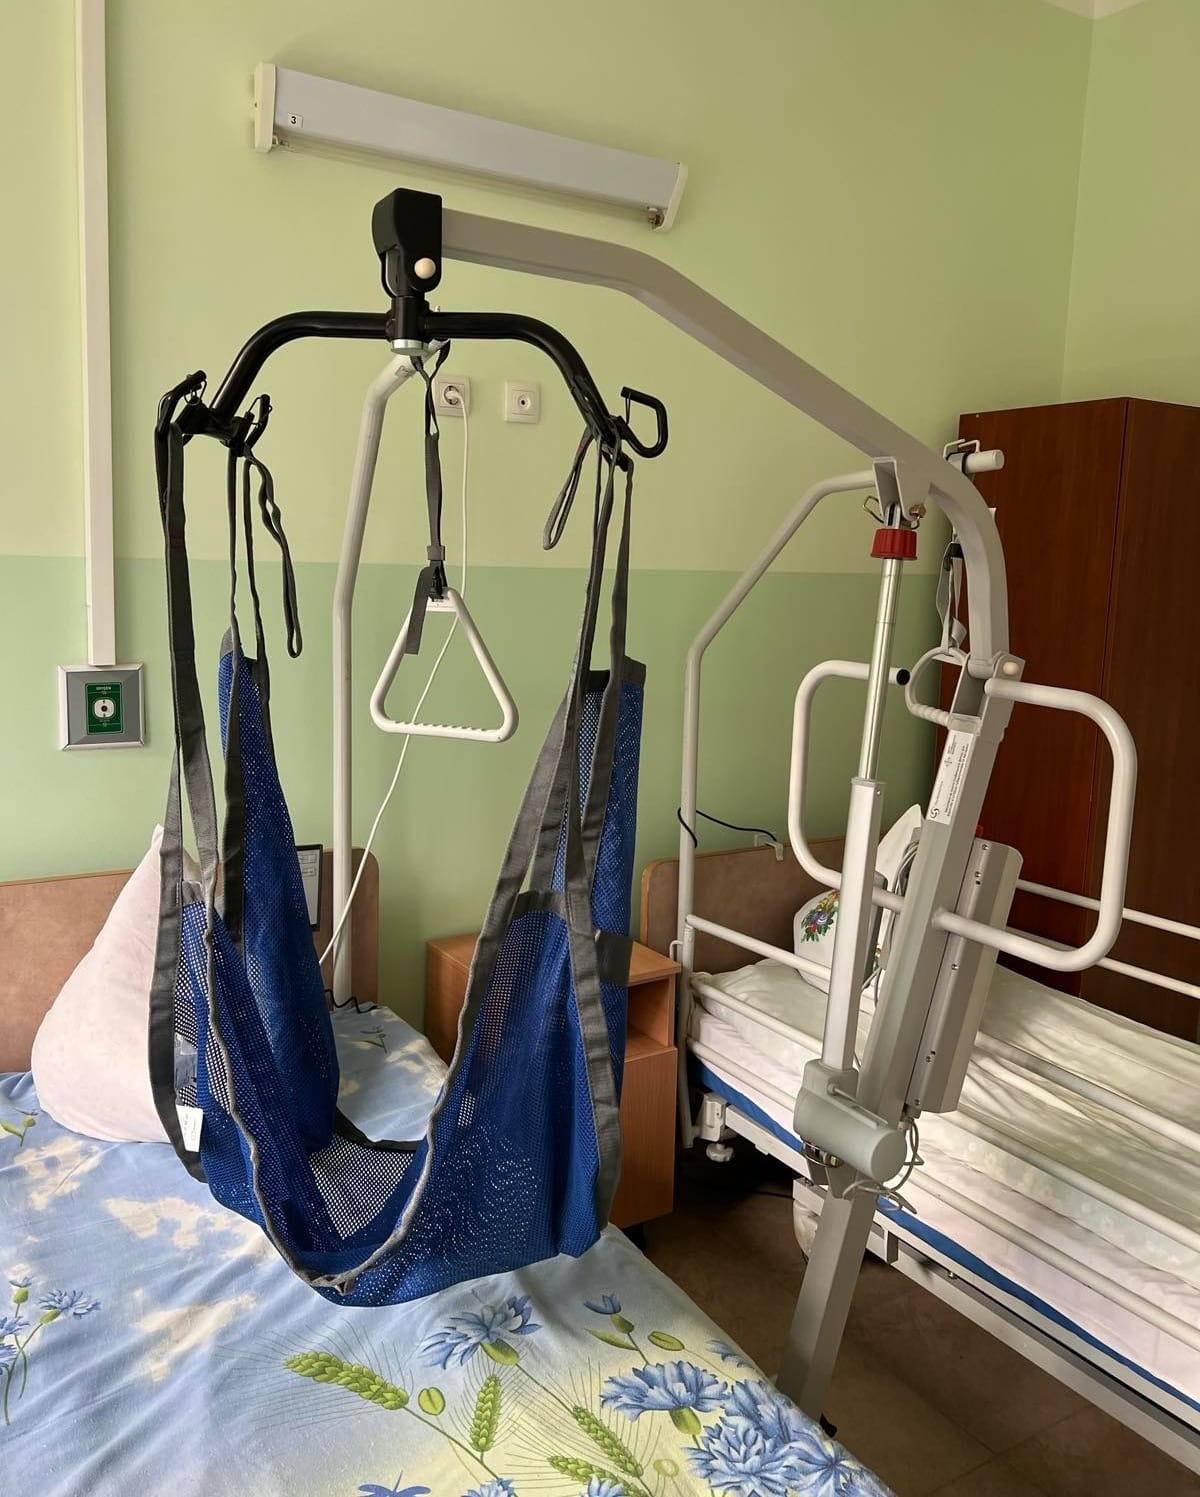 Фтизіатрія у Вінниці отримала допомогу - ліжка, матраци та спецпристрої